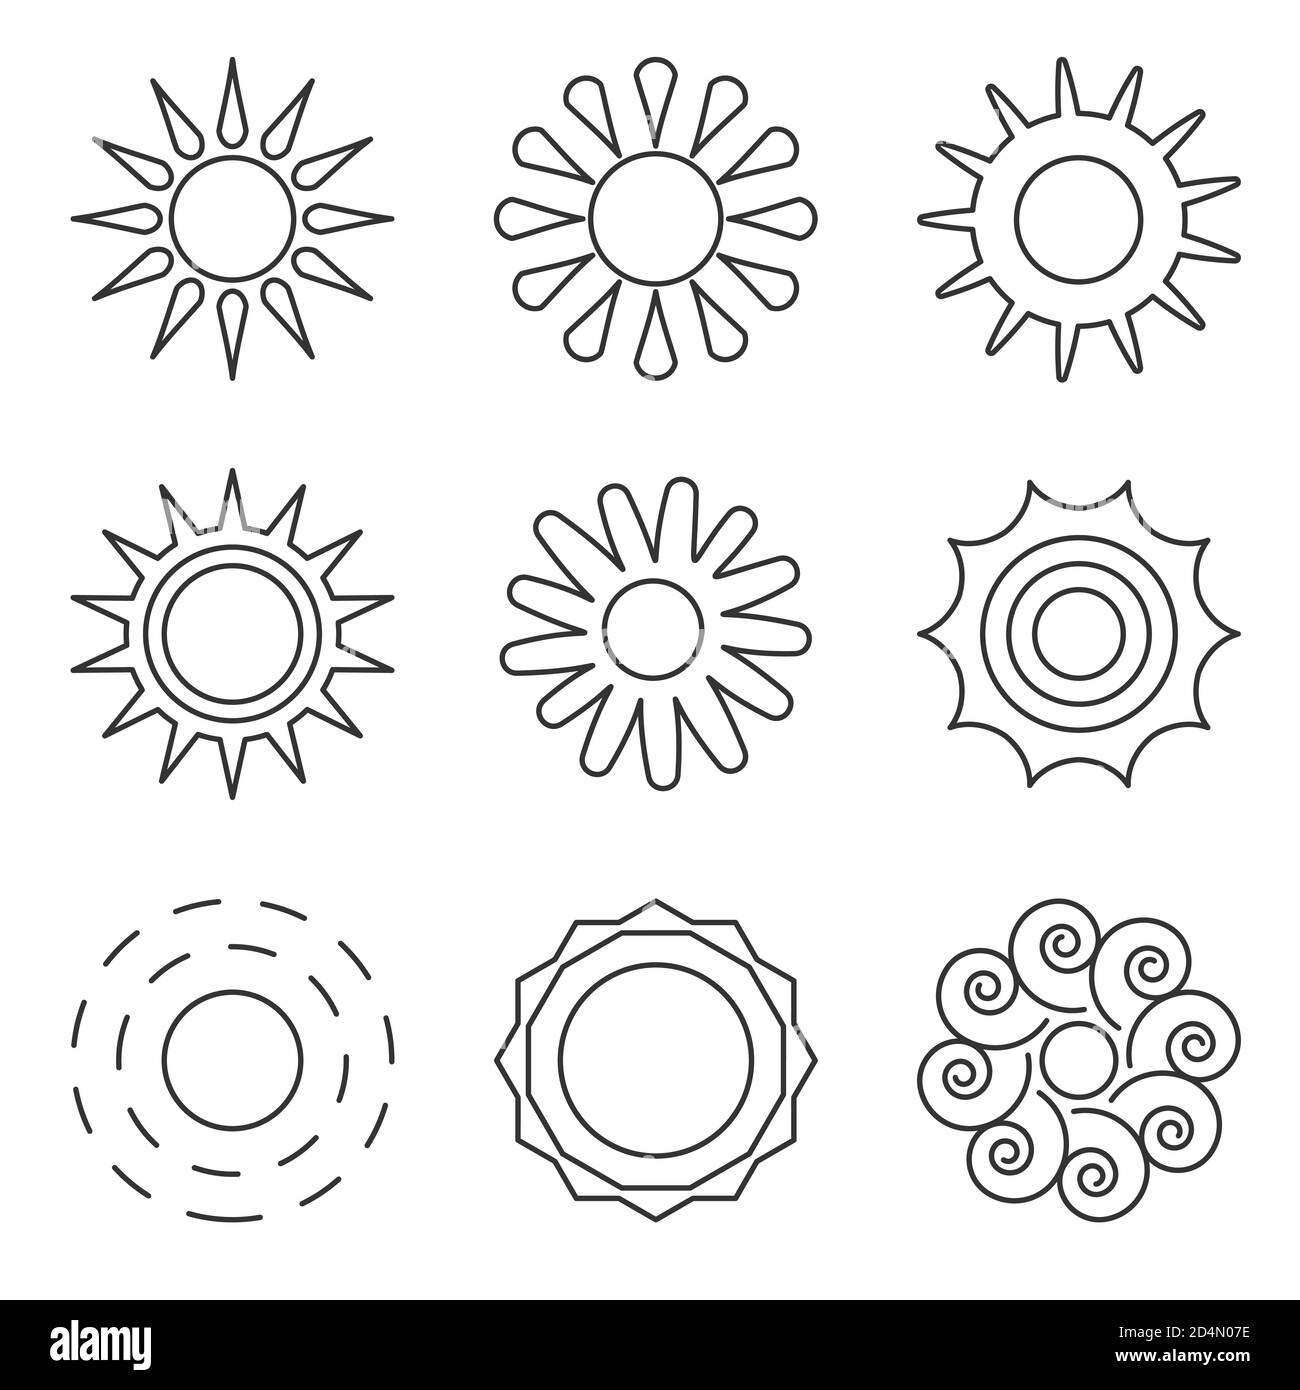 Schwarz umrandet Sonnensymbole gesetzt. Verschiedene Formen leeren einfache Solarelemente. Design Logo Sonnenlicht Morgen, Wetter, Frühling. Rundes Piktogramm sonnige Energie für Web oder App. Isolierte Vektordarstellung Stock Vektor